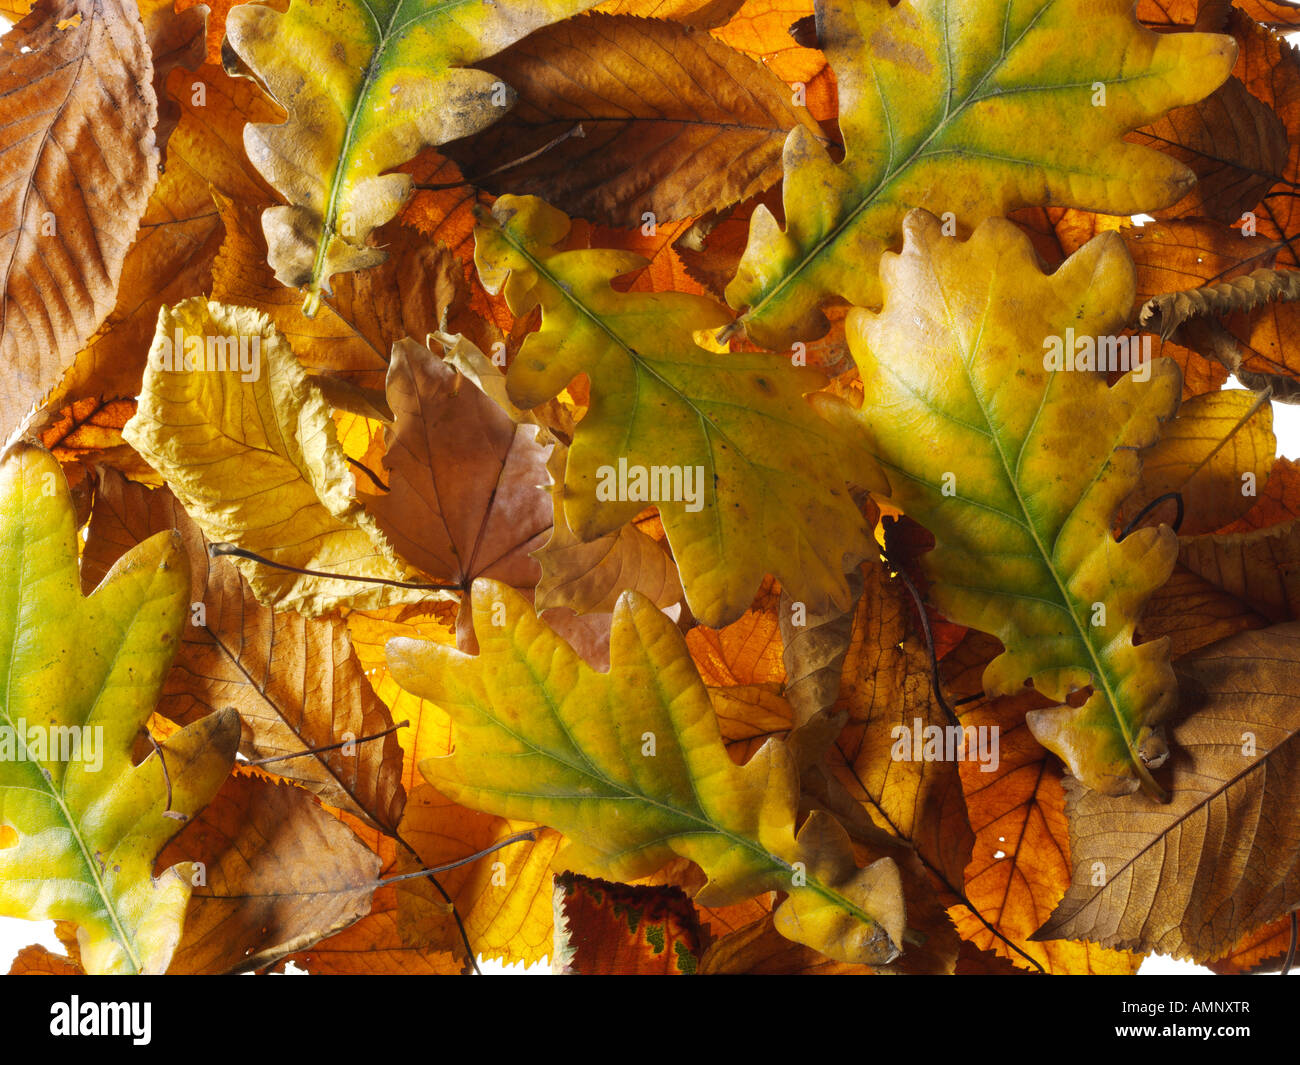 Gefallen, Herbst, die Blätter fallen übereinander gestapelt. Getrocknete bunte Blätter mit den warmen herbstlichen Farben und Texturen der Fall. Stockfoto